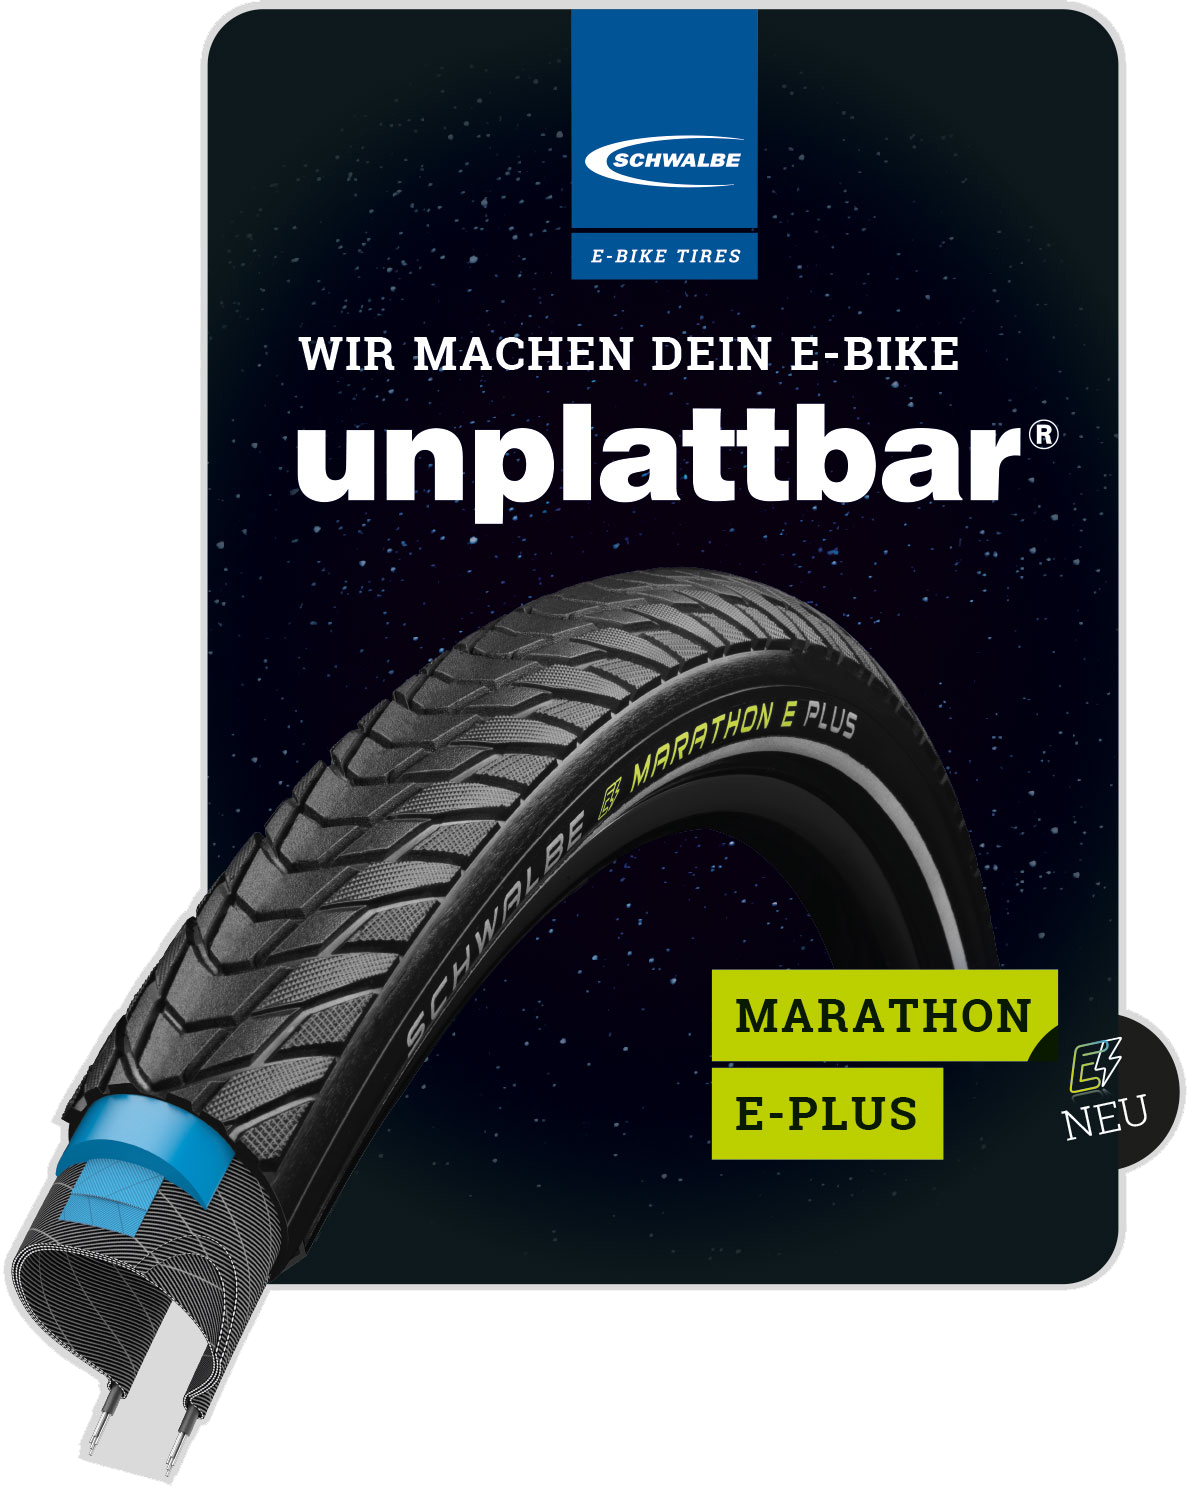 Schwalbe Aufkleber "UNPLATTBAR - Marathon E-Plus" - Deutsch